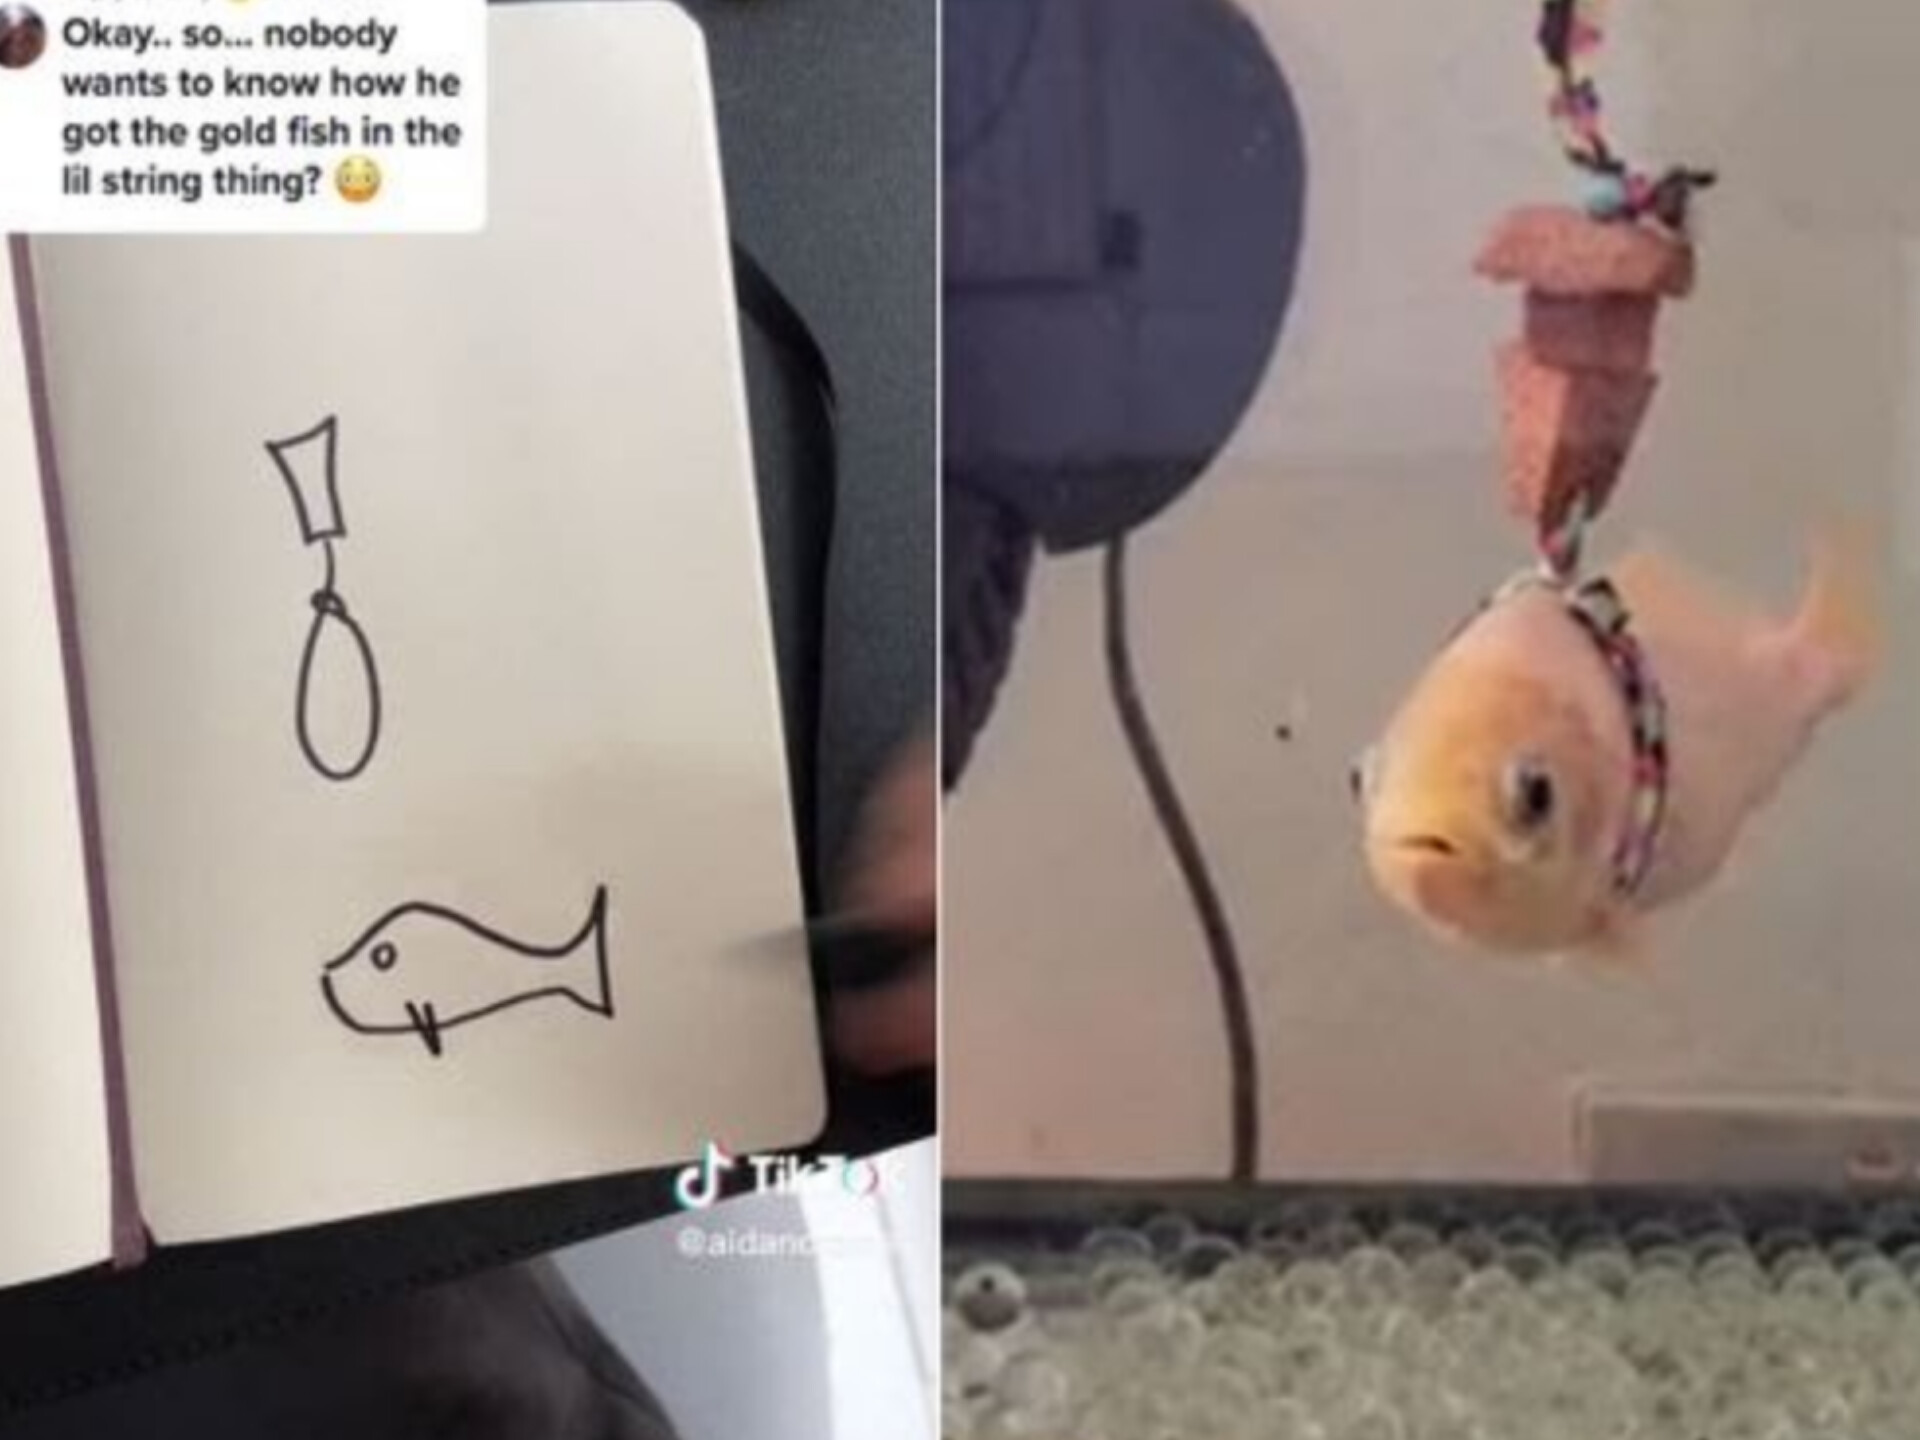 Usuário do "TikTok" faz colete salva-vidas ao seu peixinho dourado de estimação e viraliza na internet.